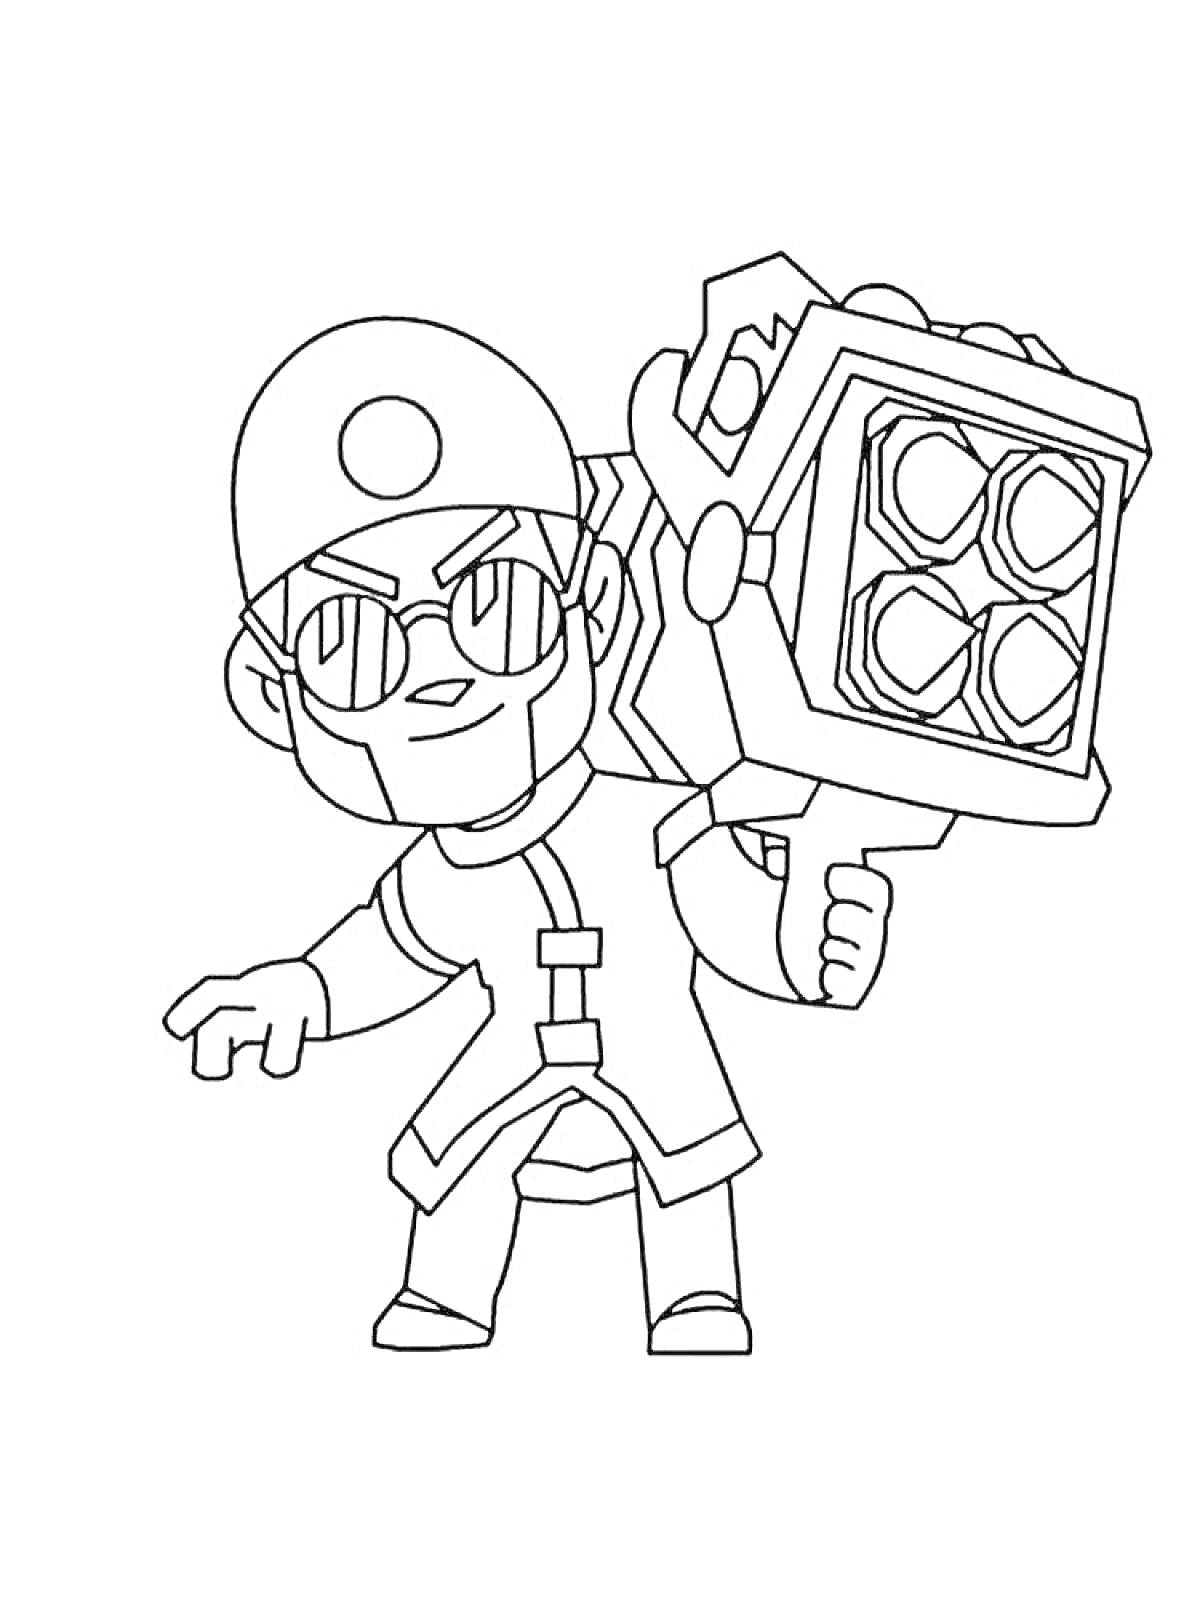 Раскраска Боец в шлеме с очками, держащий большое оружие с четырьмя линзами из игры Brawl Stars (Честер)